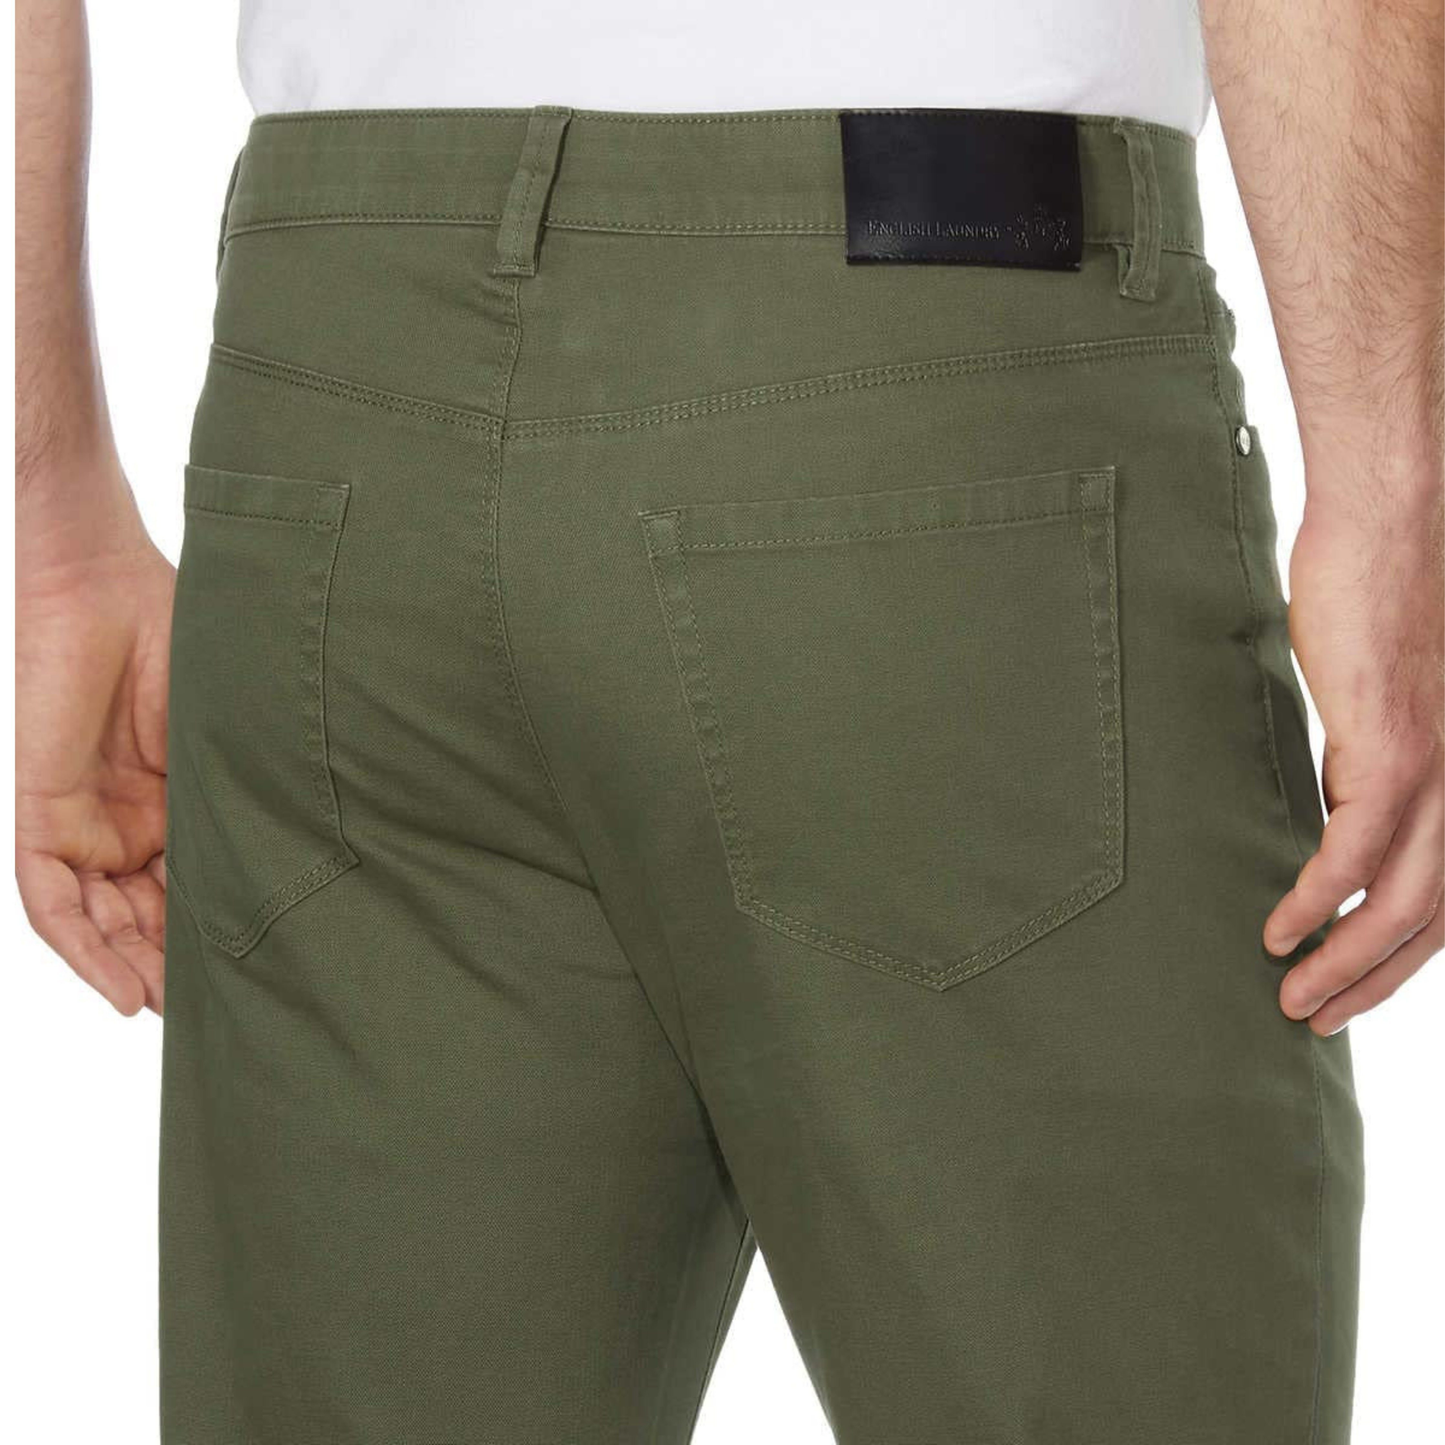 Men's Pants- English Laundry Men's Slimmer Straight Leg 5-Pocket (Green)